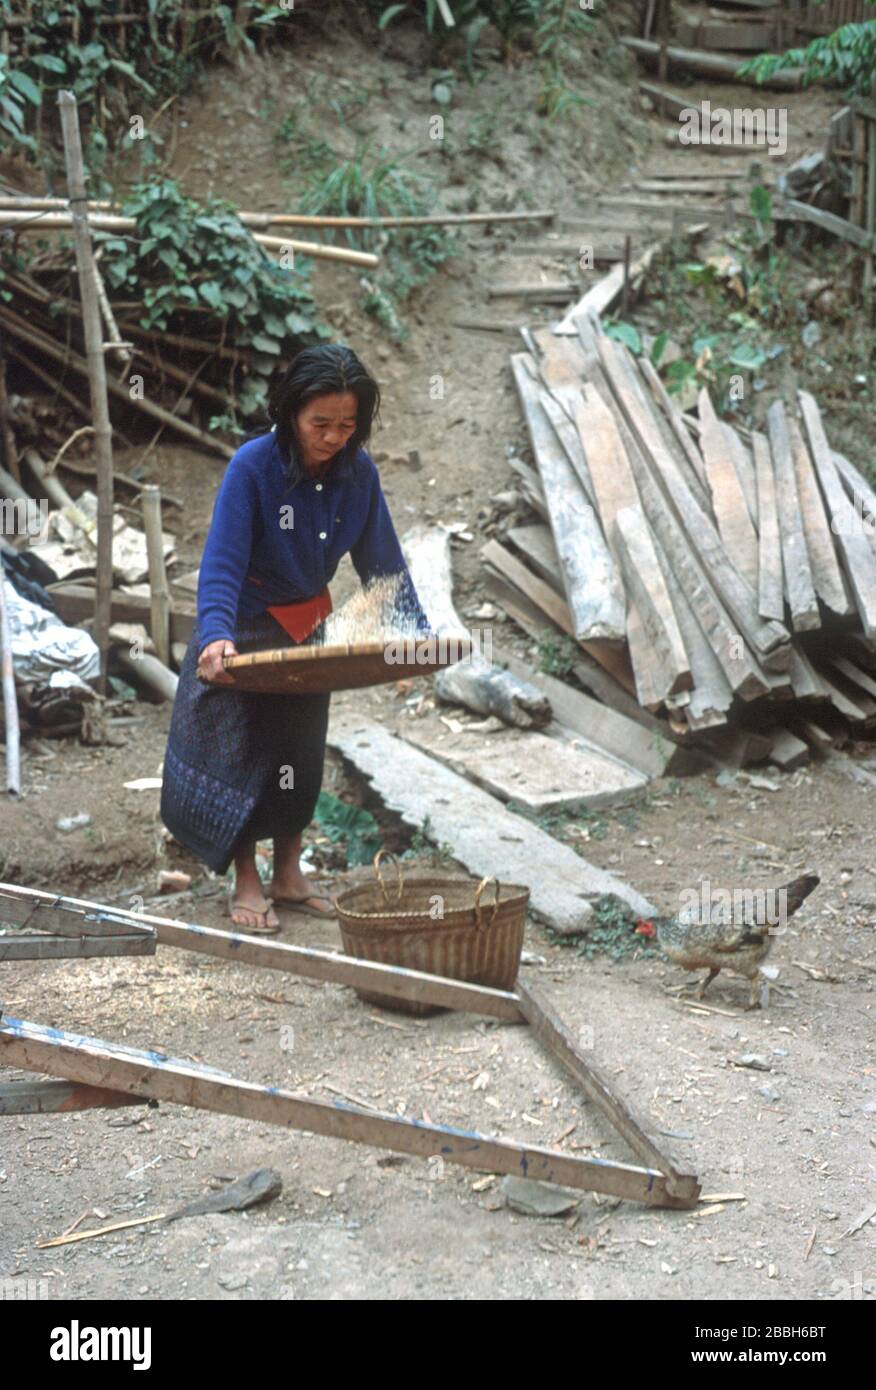 Una donna Lao in abito tradizionale lancia il riso nell'aria da un vassoio intrecciato in Luang Prabang, Laos. Questa annaffiatura permette all'aria di separare i grani commestibili dai gambi, fieno, pula e insetti. Ha un cesto di vimini per tenere il riso e un pollo raccoglie attraverso i avanzi sul terreno. La città di Luang Prabang è patrimonio dell'umanità dell'UNESCO. Foto Stock